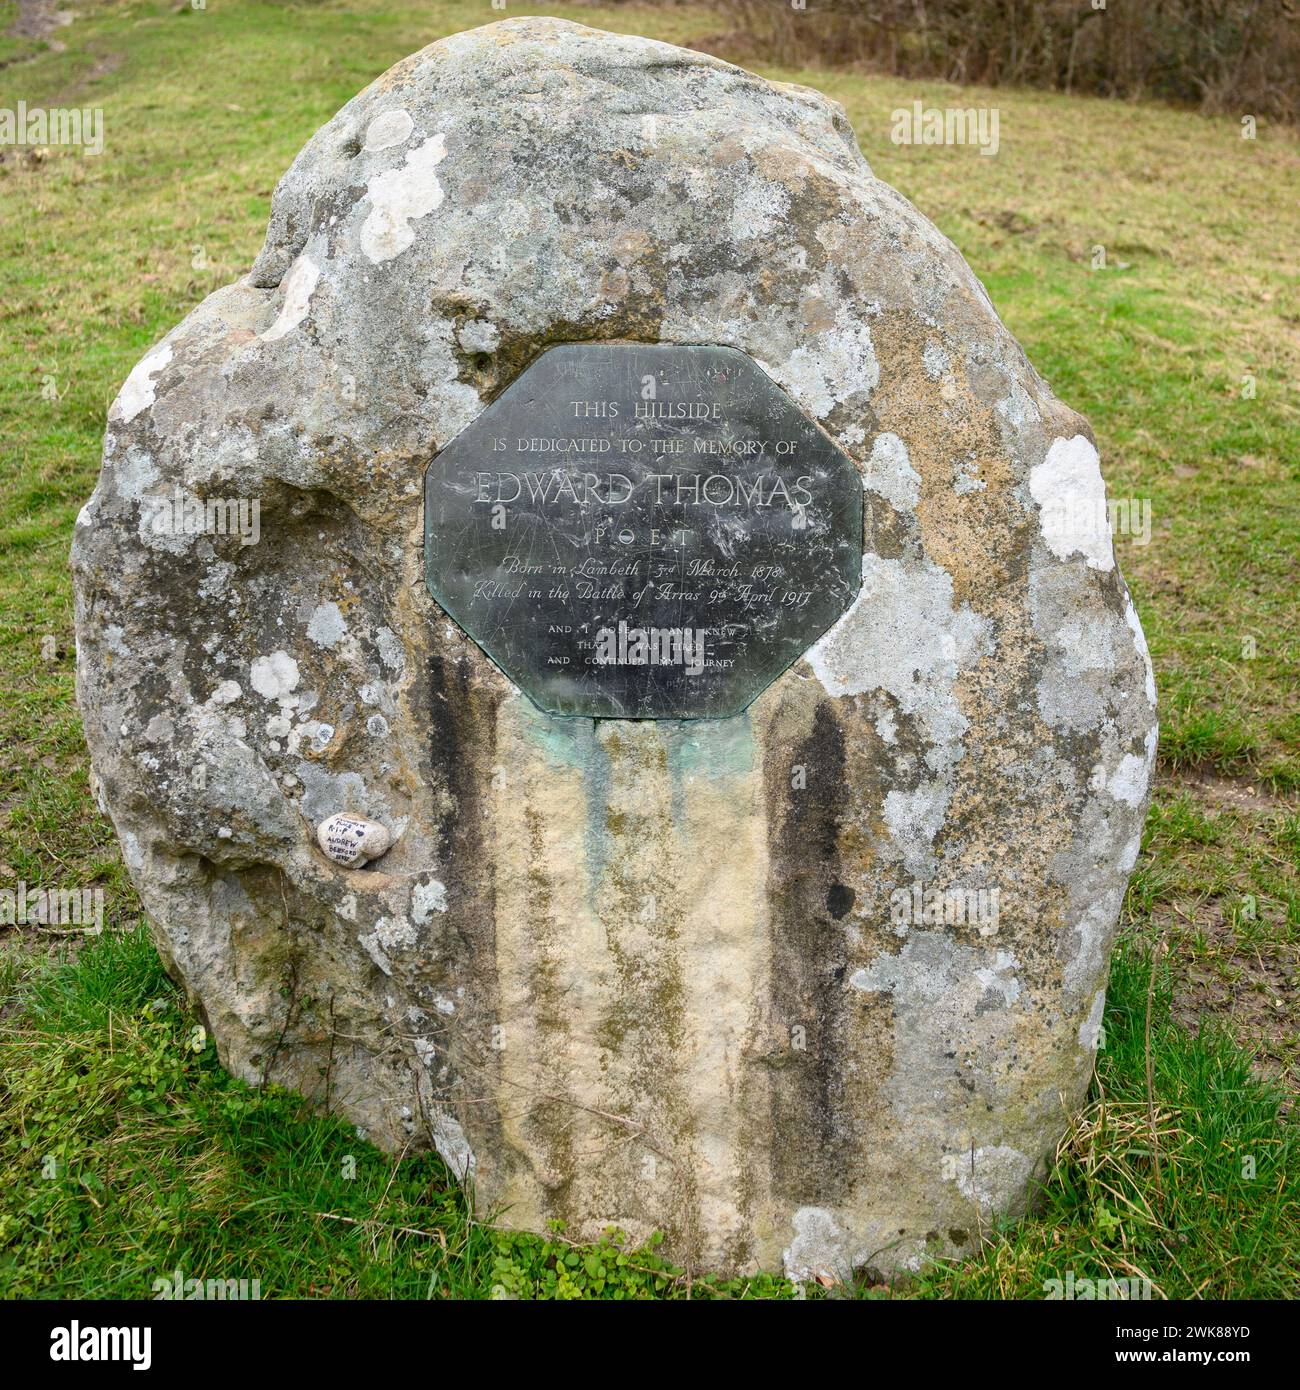 Plaque commémorative à Edward Thomas, poète, sur une pierre verticale à Ashford Hangers nature Reserve, Petersfield, Hampshire, Royaume-Uni Banque D'Images